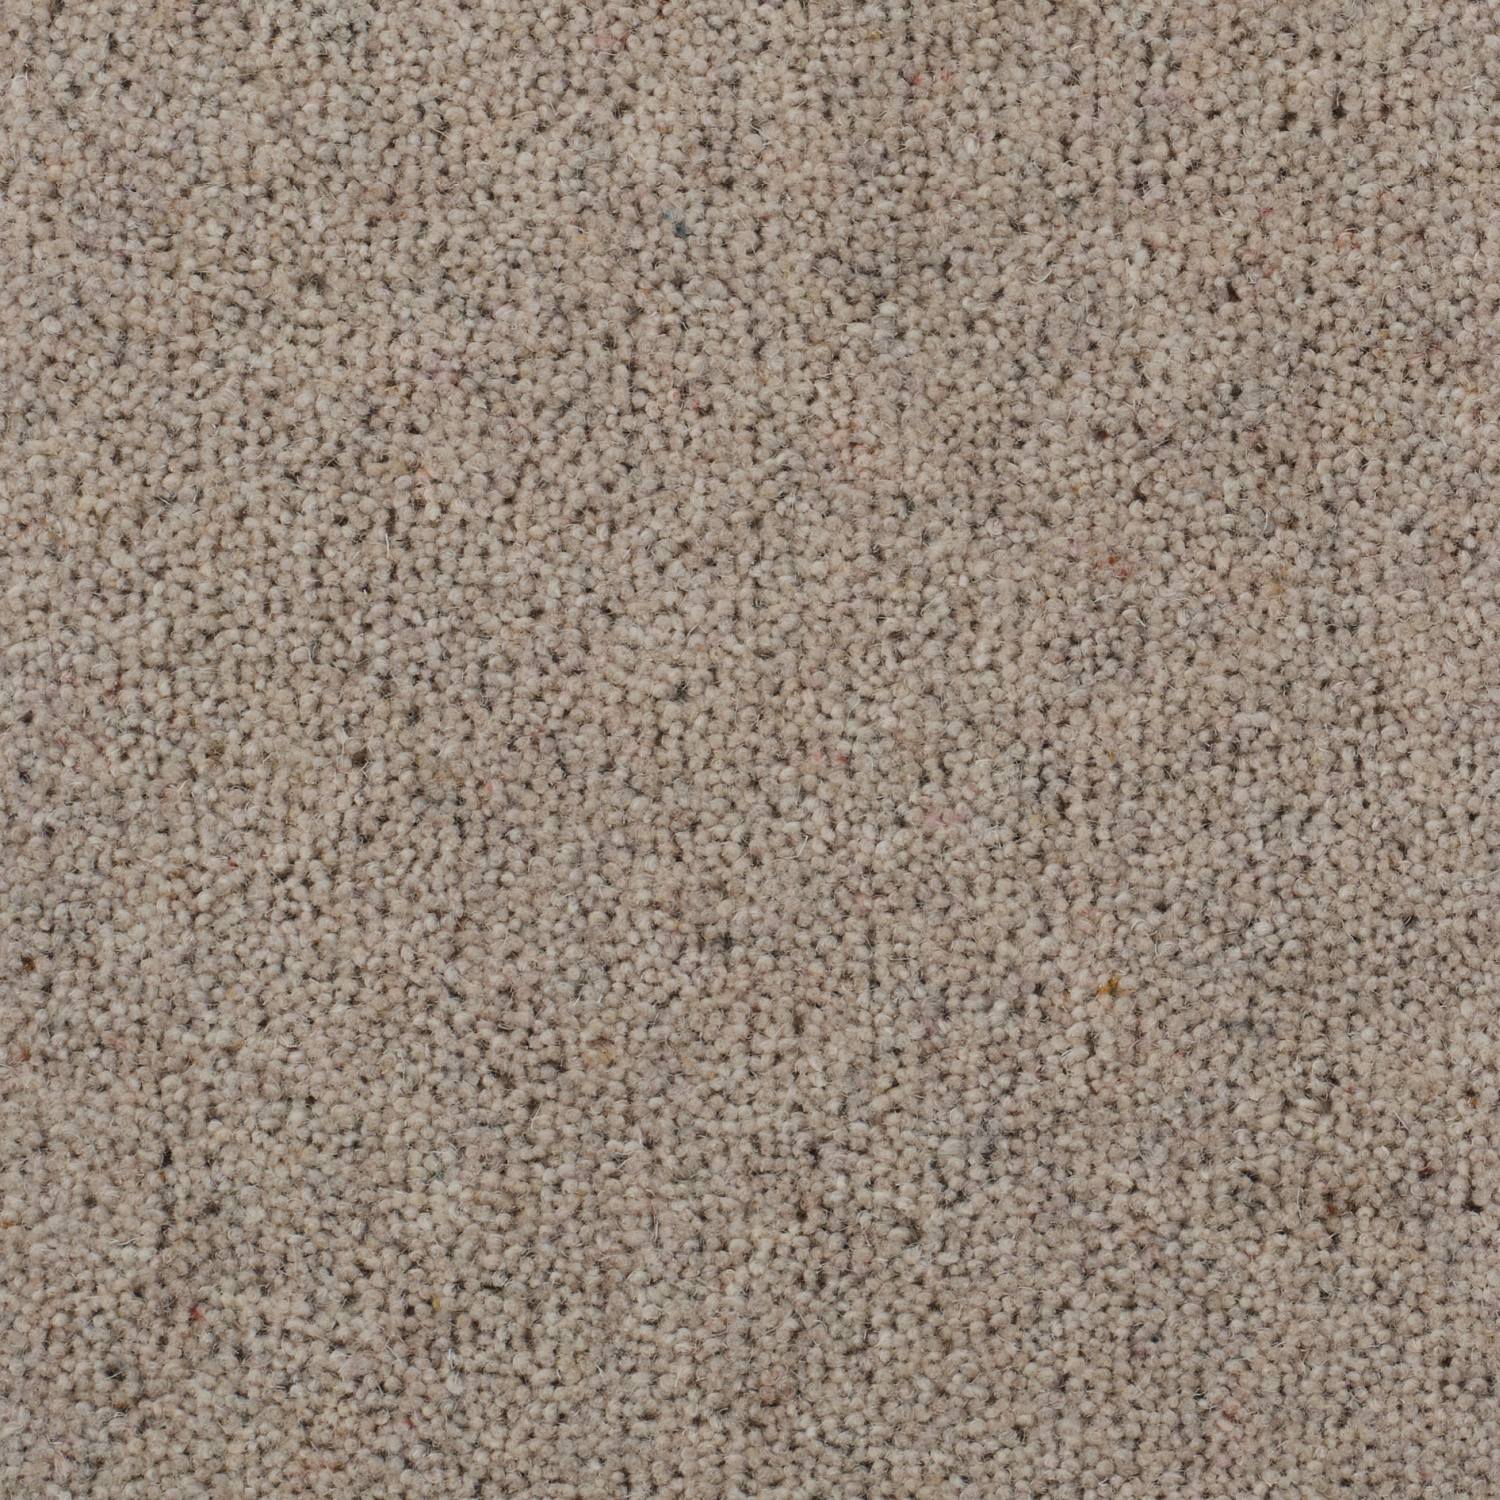 Riverside Origins Wool Carpet - Desert Sand